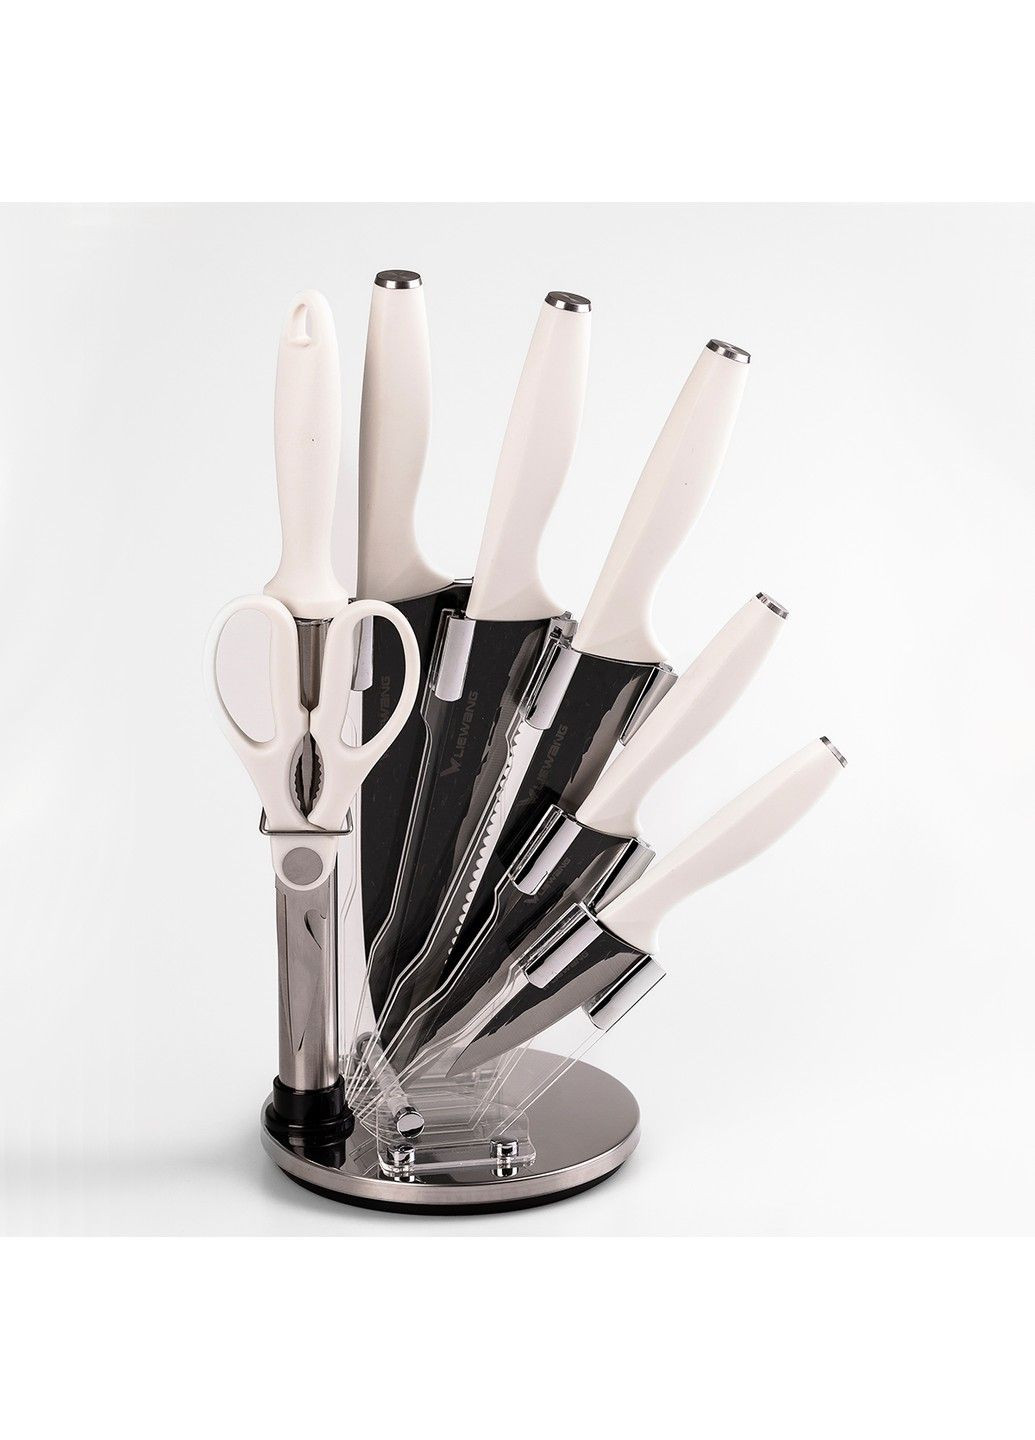 Набор кухонных ножей 7 предметов. Without (293061832)